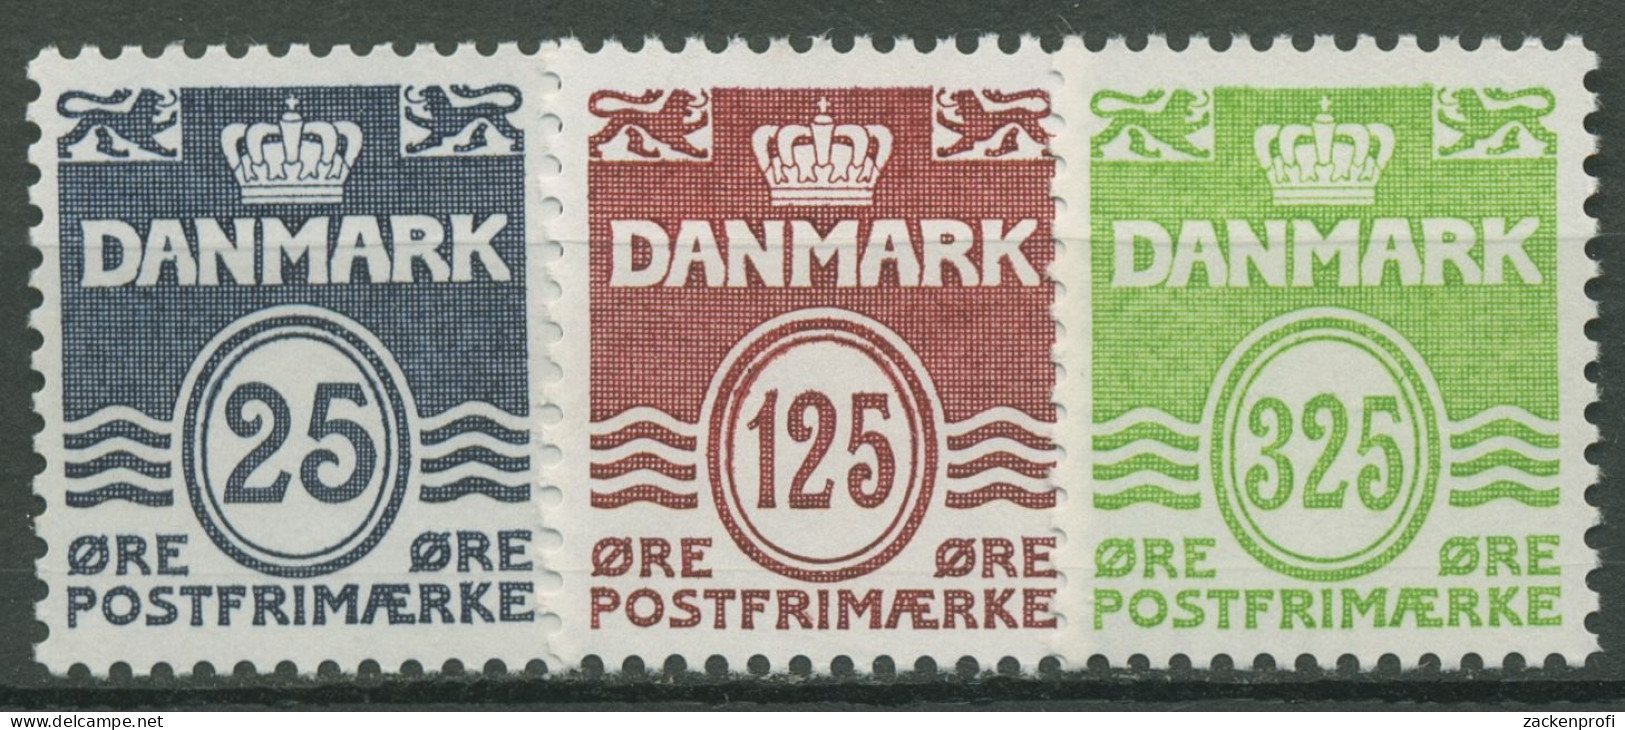 Dänemark 1990 Freimarken Wellenlinien 963/65 Postfrisch - Ungebraucht